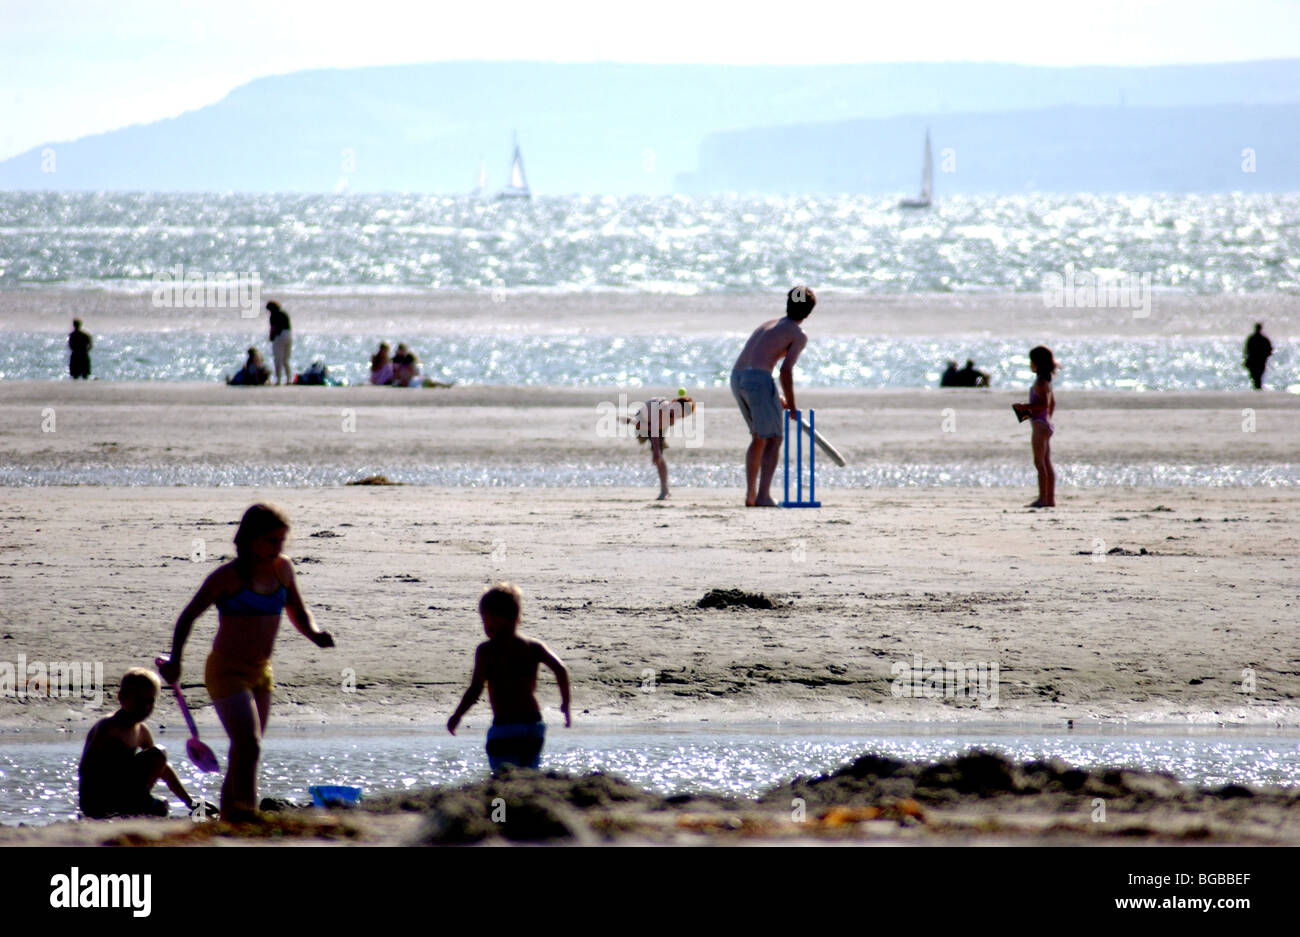 Image libre photo de famille jouant sur la plage côtière dans l'été à marée basse UK. Banque D'Images